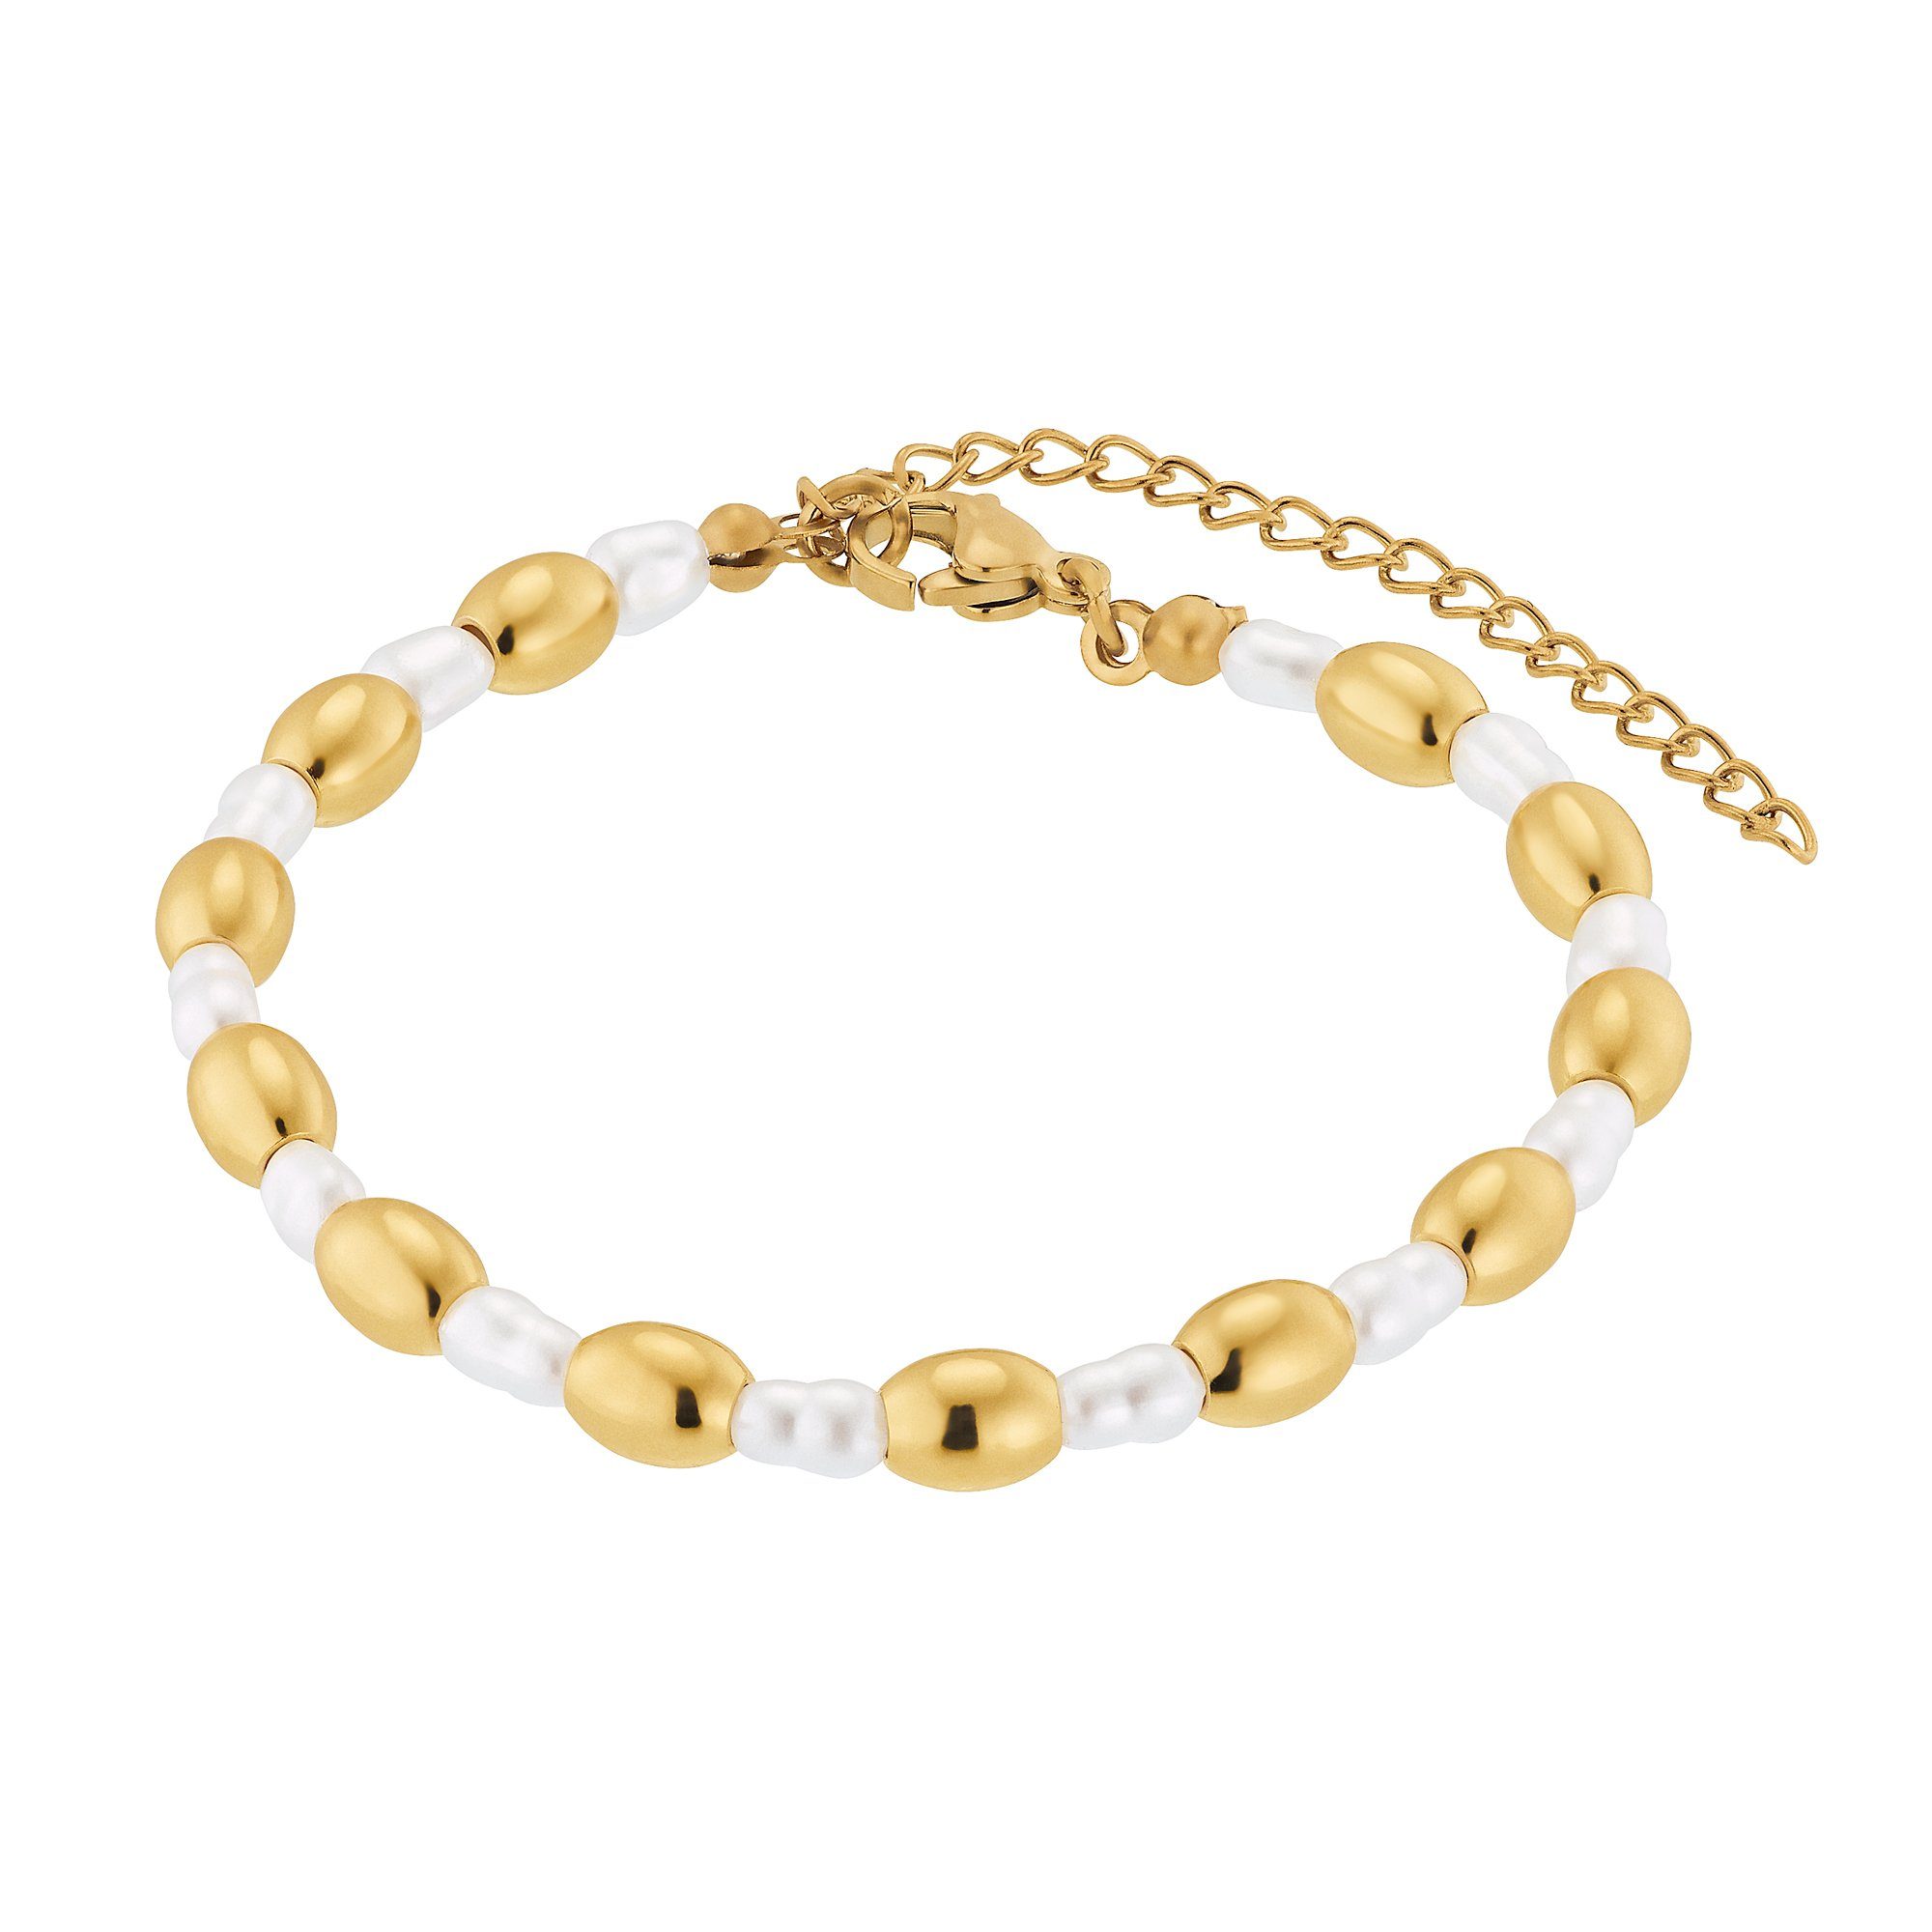 Heideman Armband Maya silberfarben poliert (Armband, inkl. Geschenkverpackung), Armkette für Frauen mit Perle goldfarben | Edelstahlarmbänder